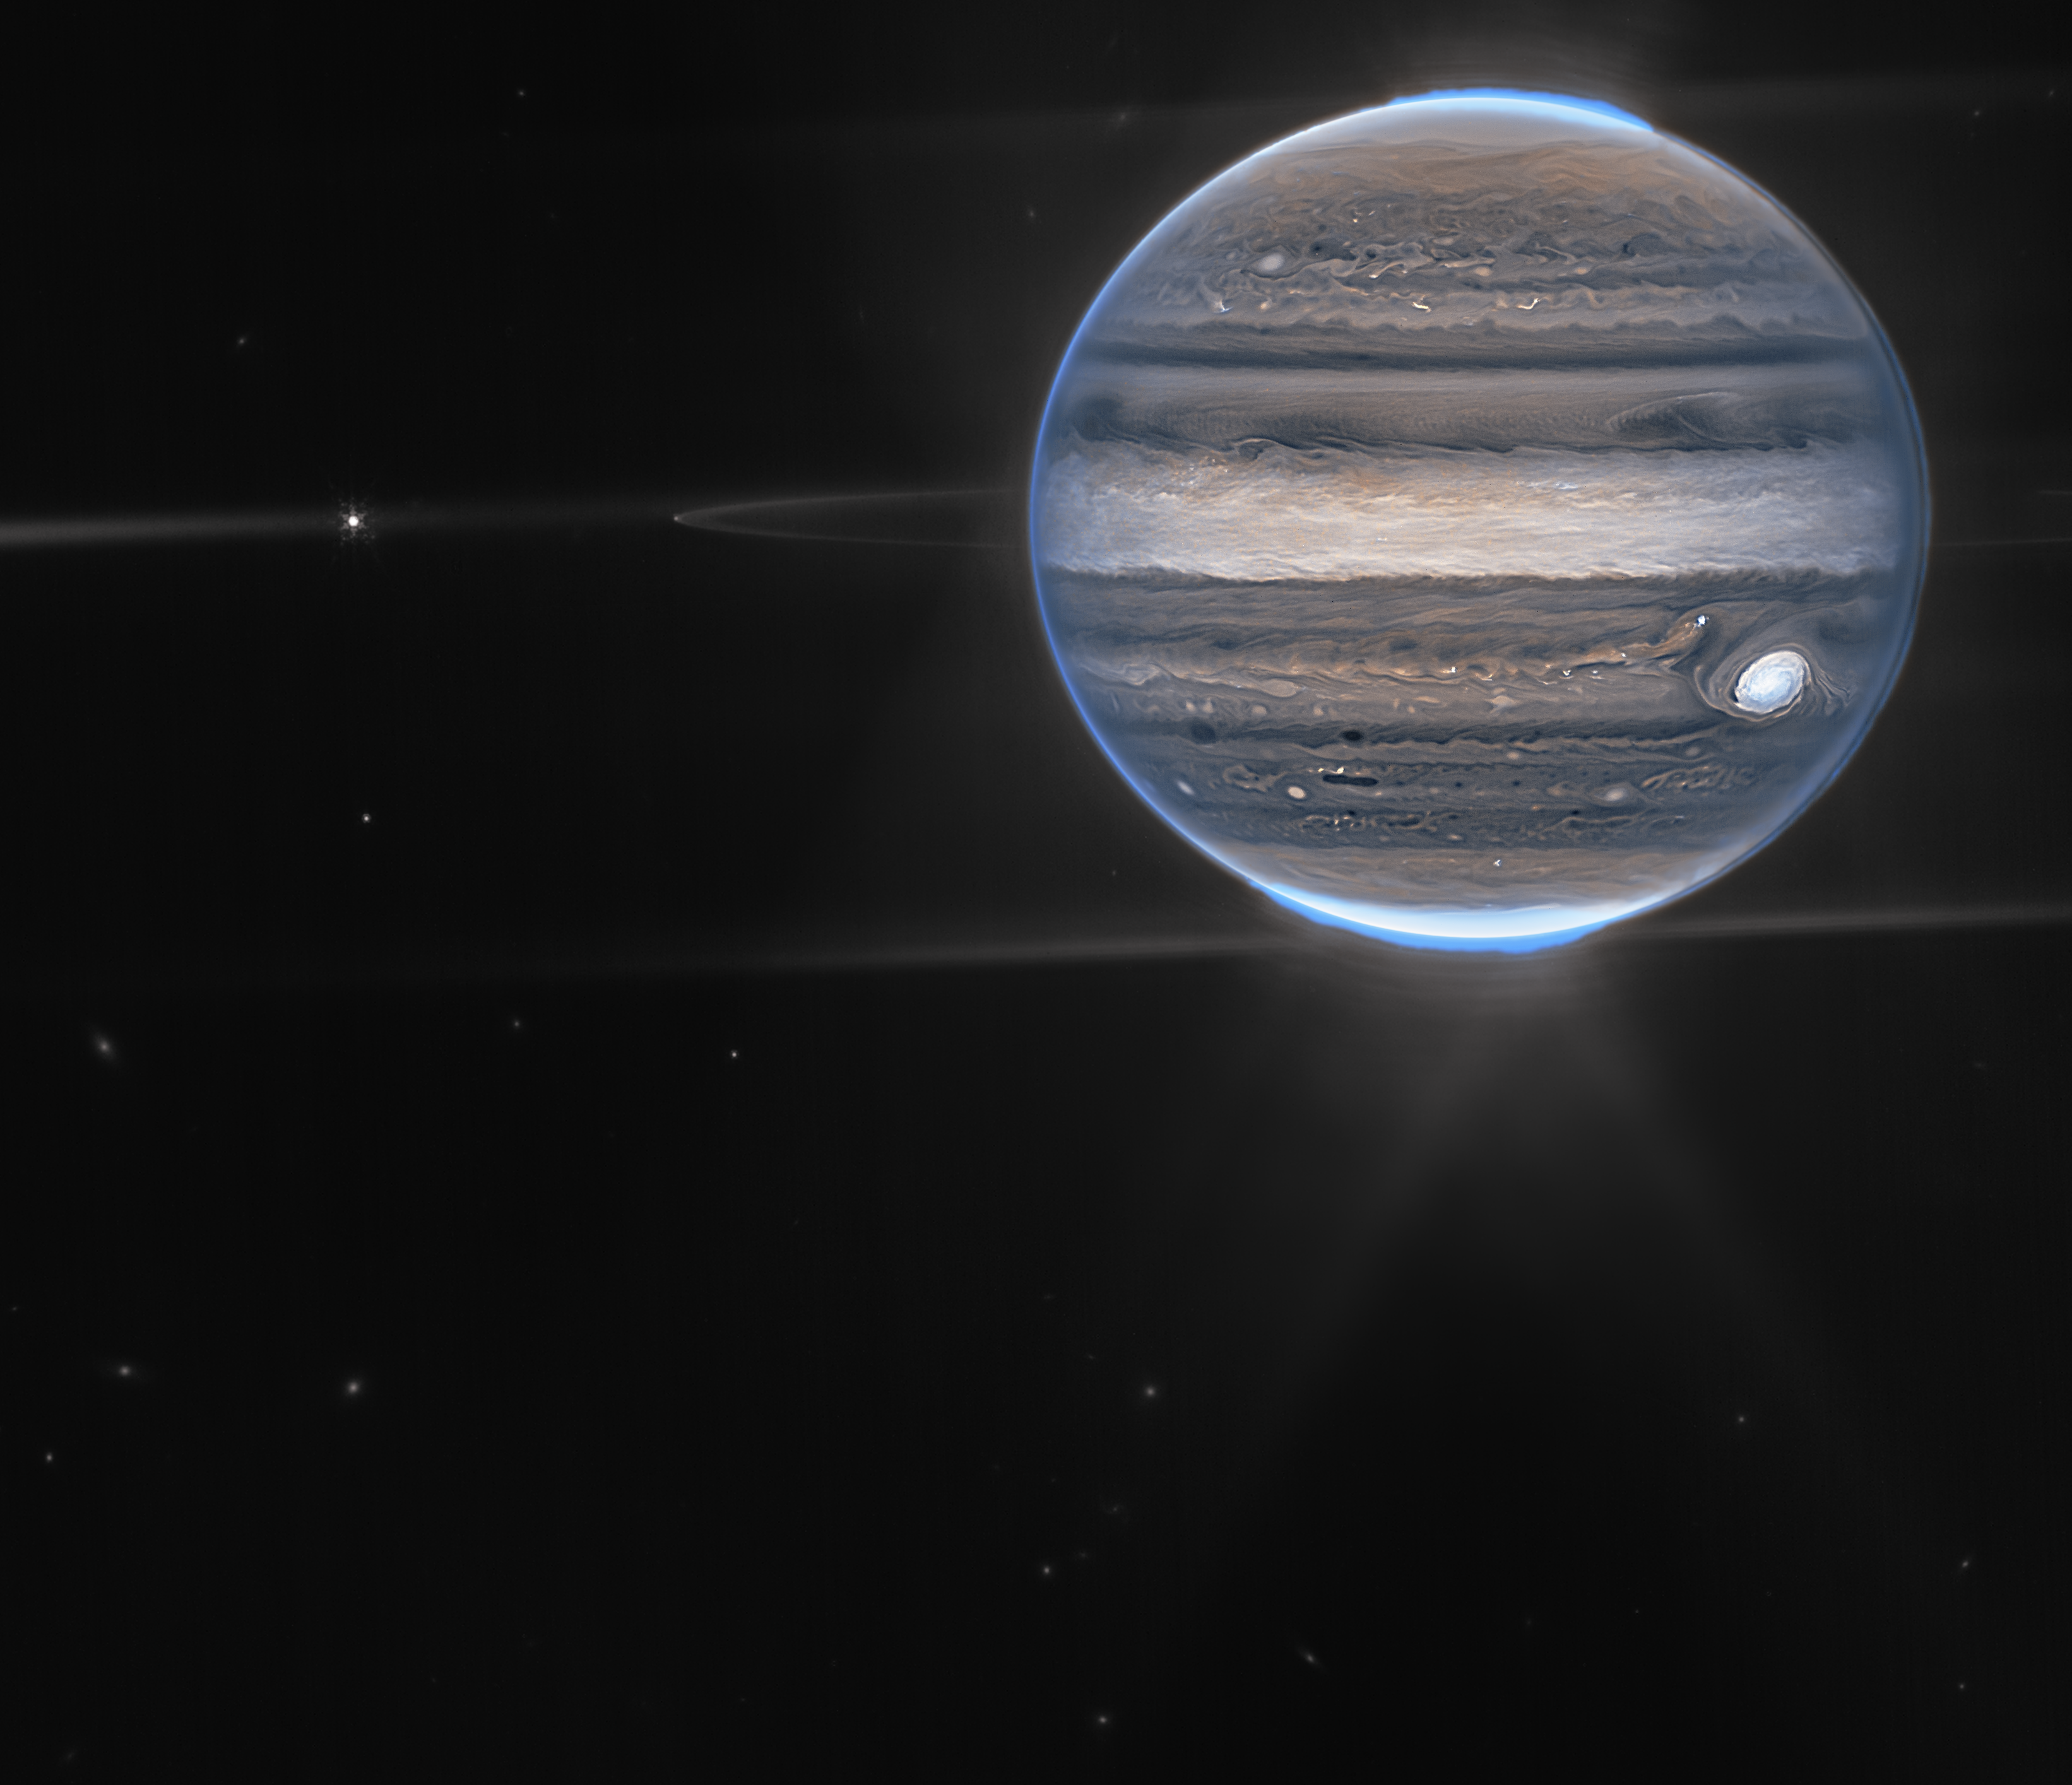 Júpiter visto con nuevos y maravillosos detalles, incluida la megatormenta en la esquina inferior derecha del planeta.